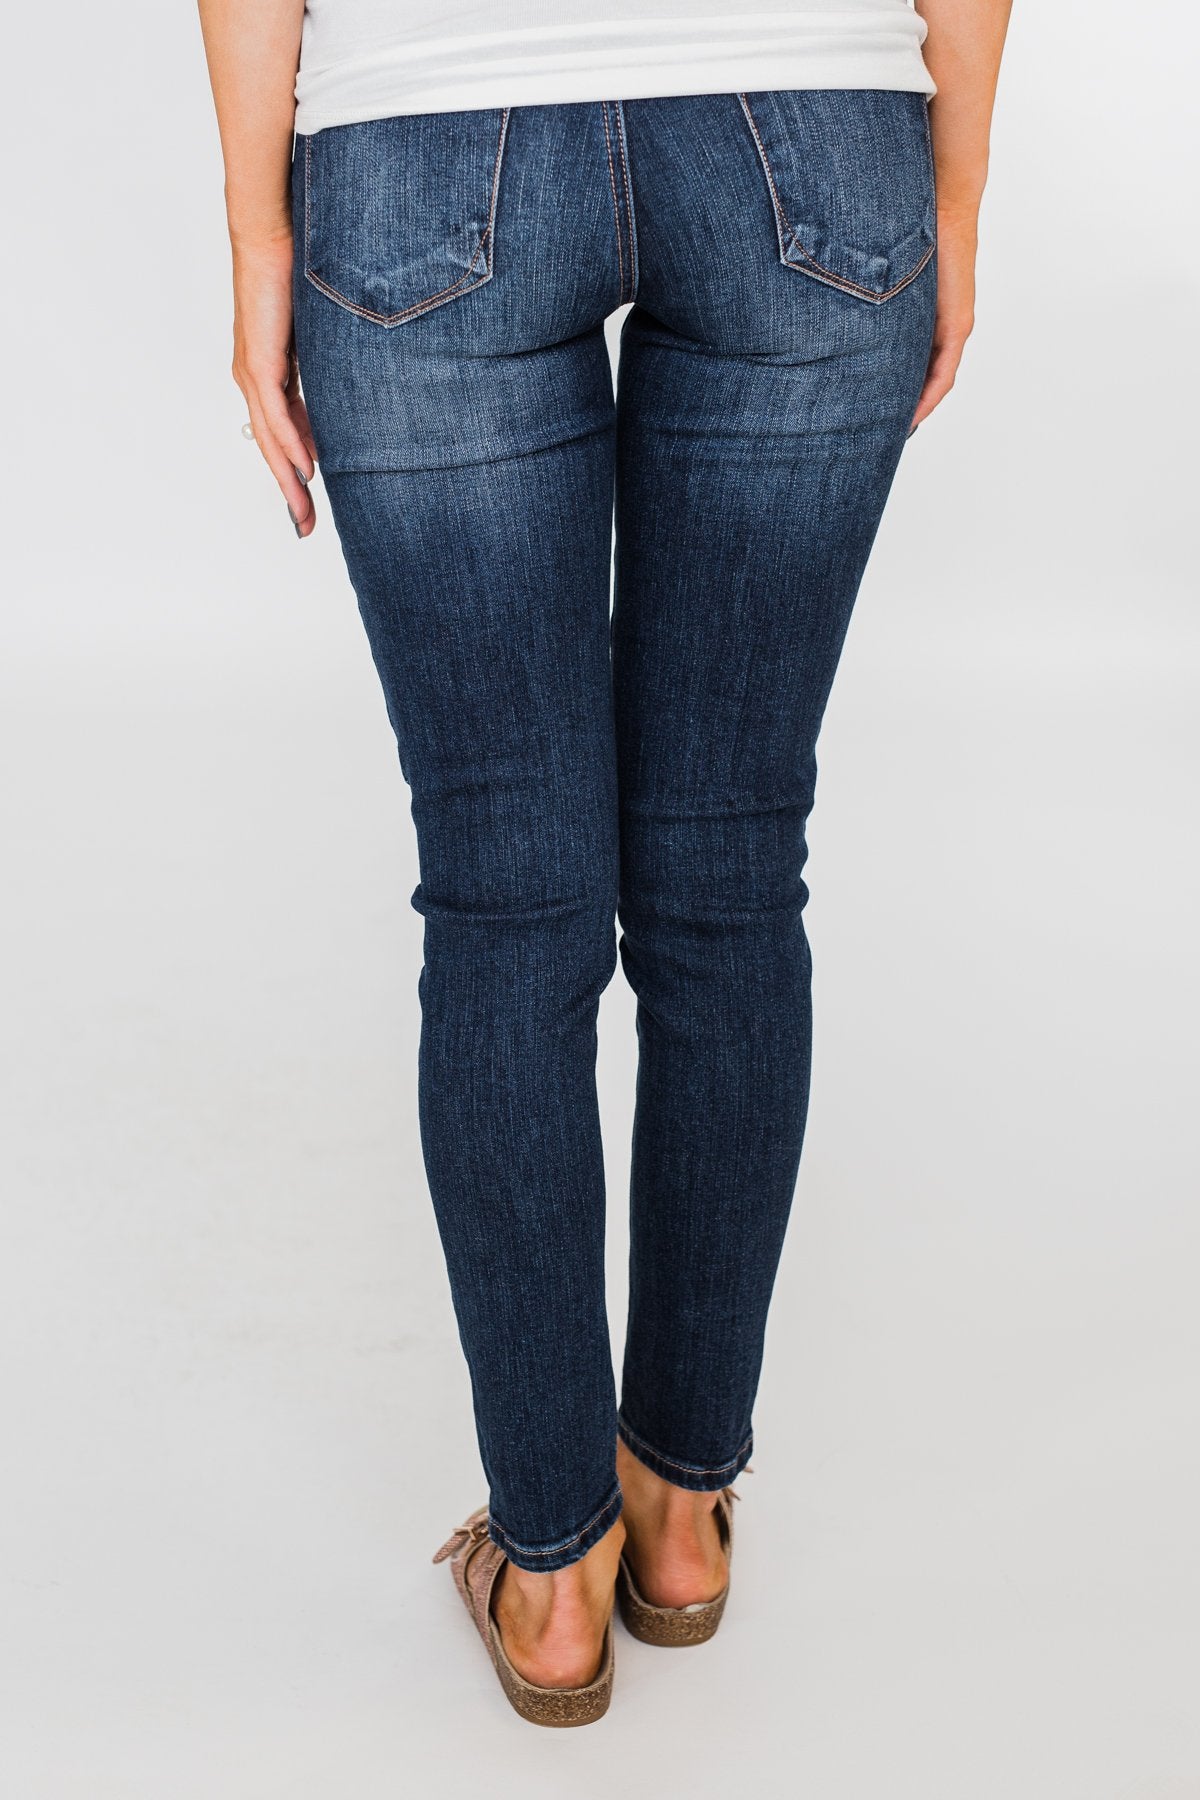 C'est Toi Non-Distressed Skinny Jeans- Mae Wash